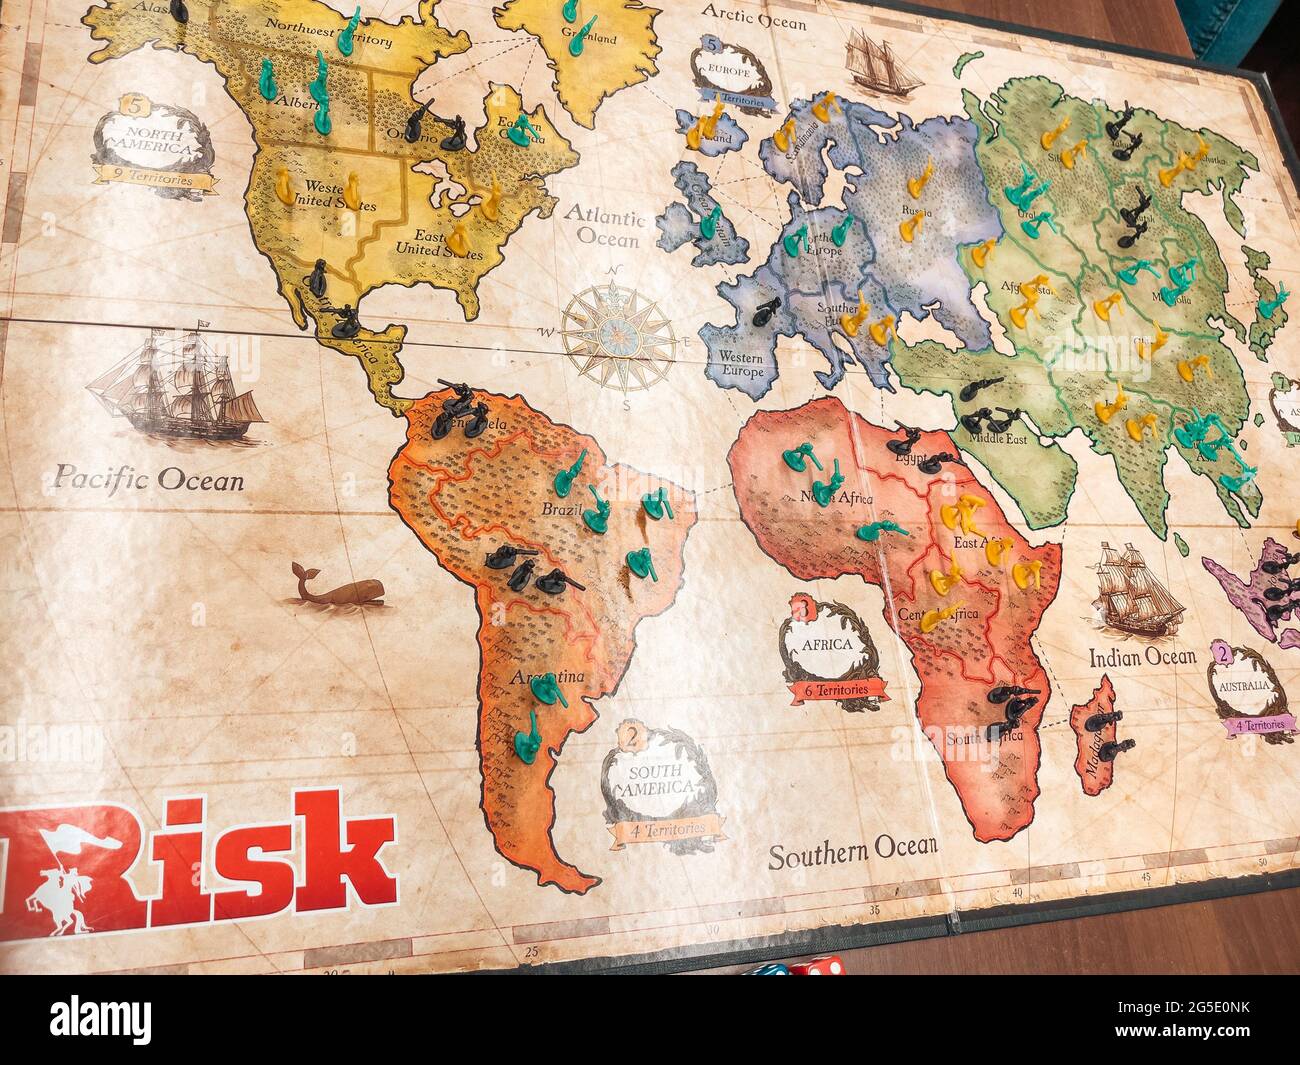 Riesgo - una familia Un juego de mesa de estrategia de diplomacia, conflicto y conquista - mapa del mundo - uno de los juegos más vendidos Foto de stock